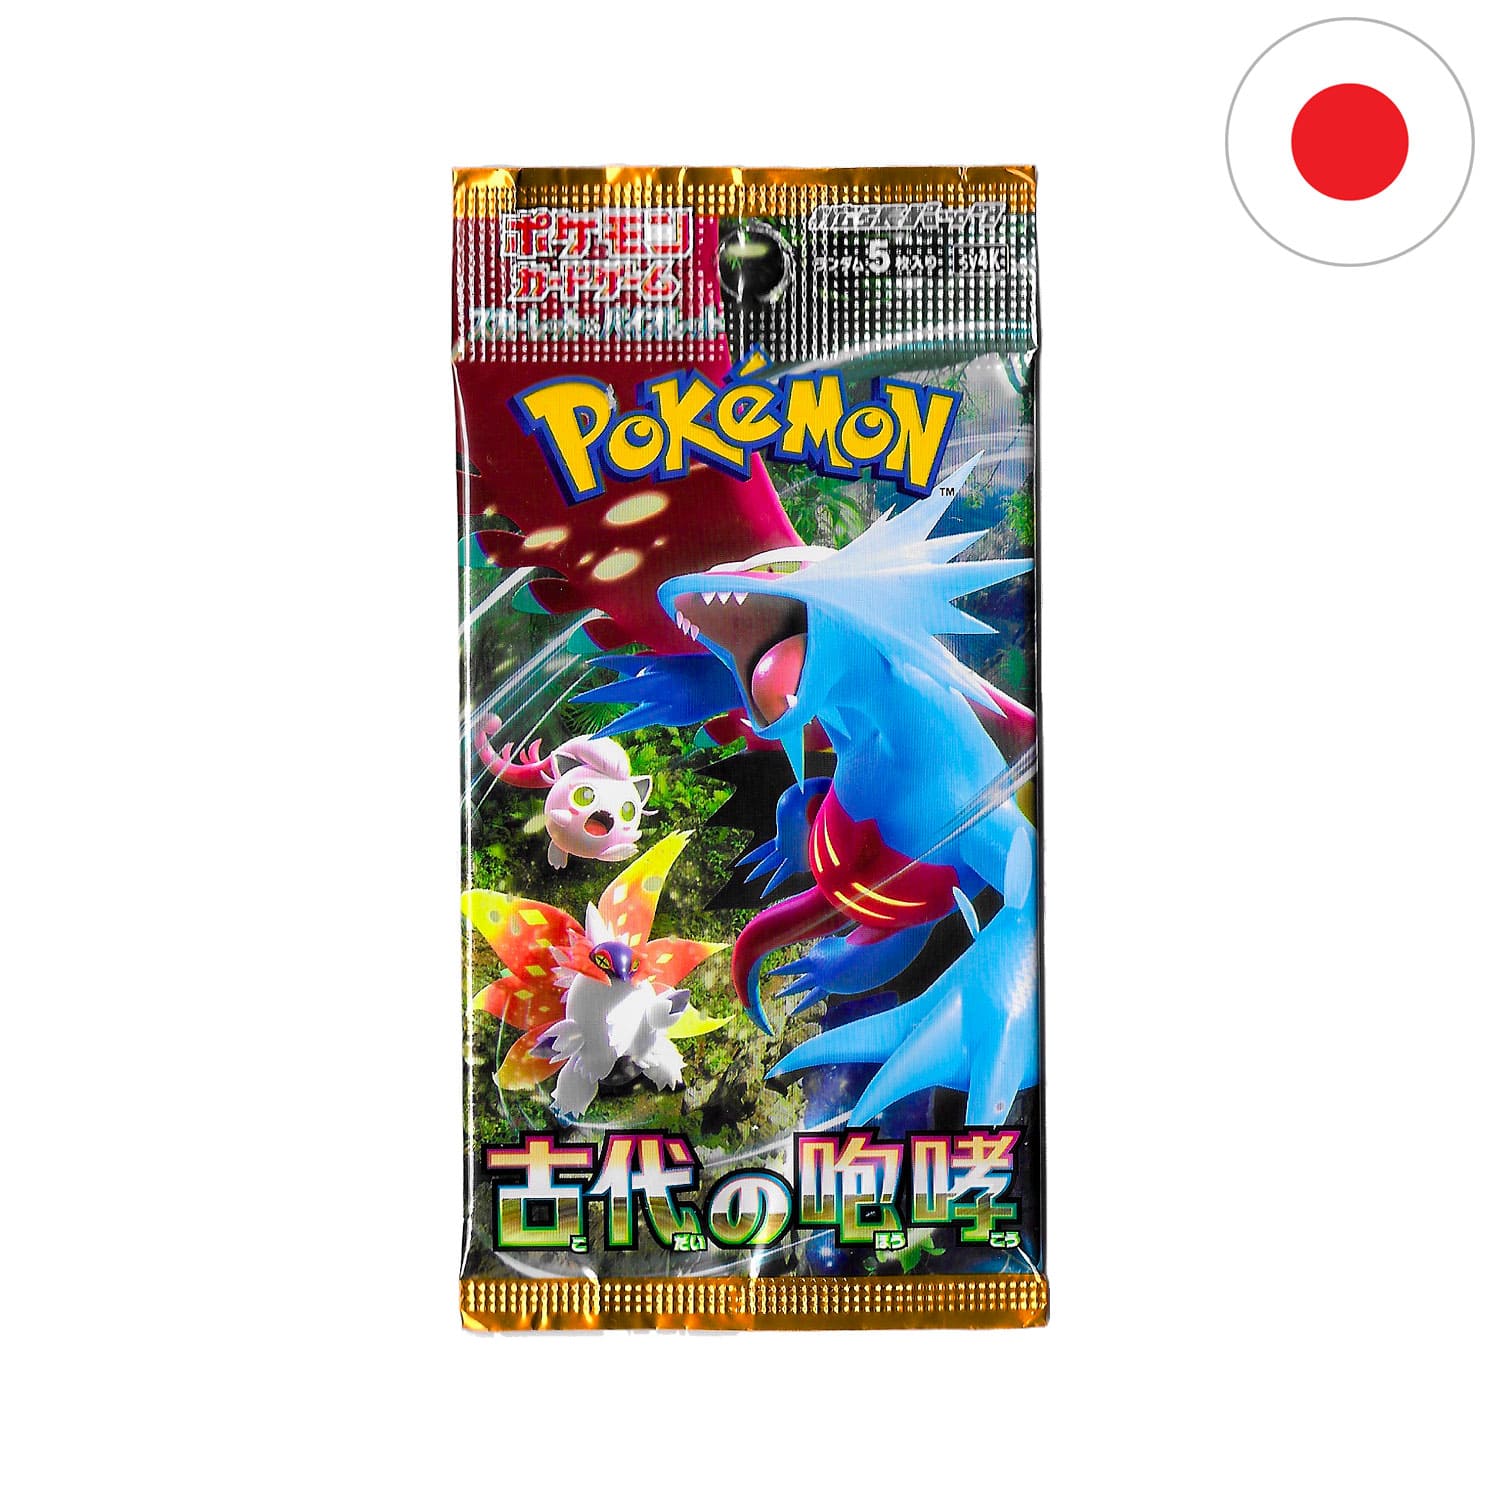 Das Pokemon Boosterpack Ancient Roar als Scan, mit Brutalanda auf dem Cover und der Flagge Japans in der Ecke.